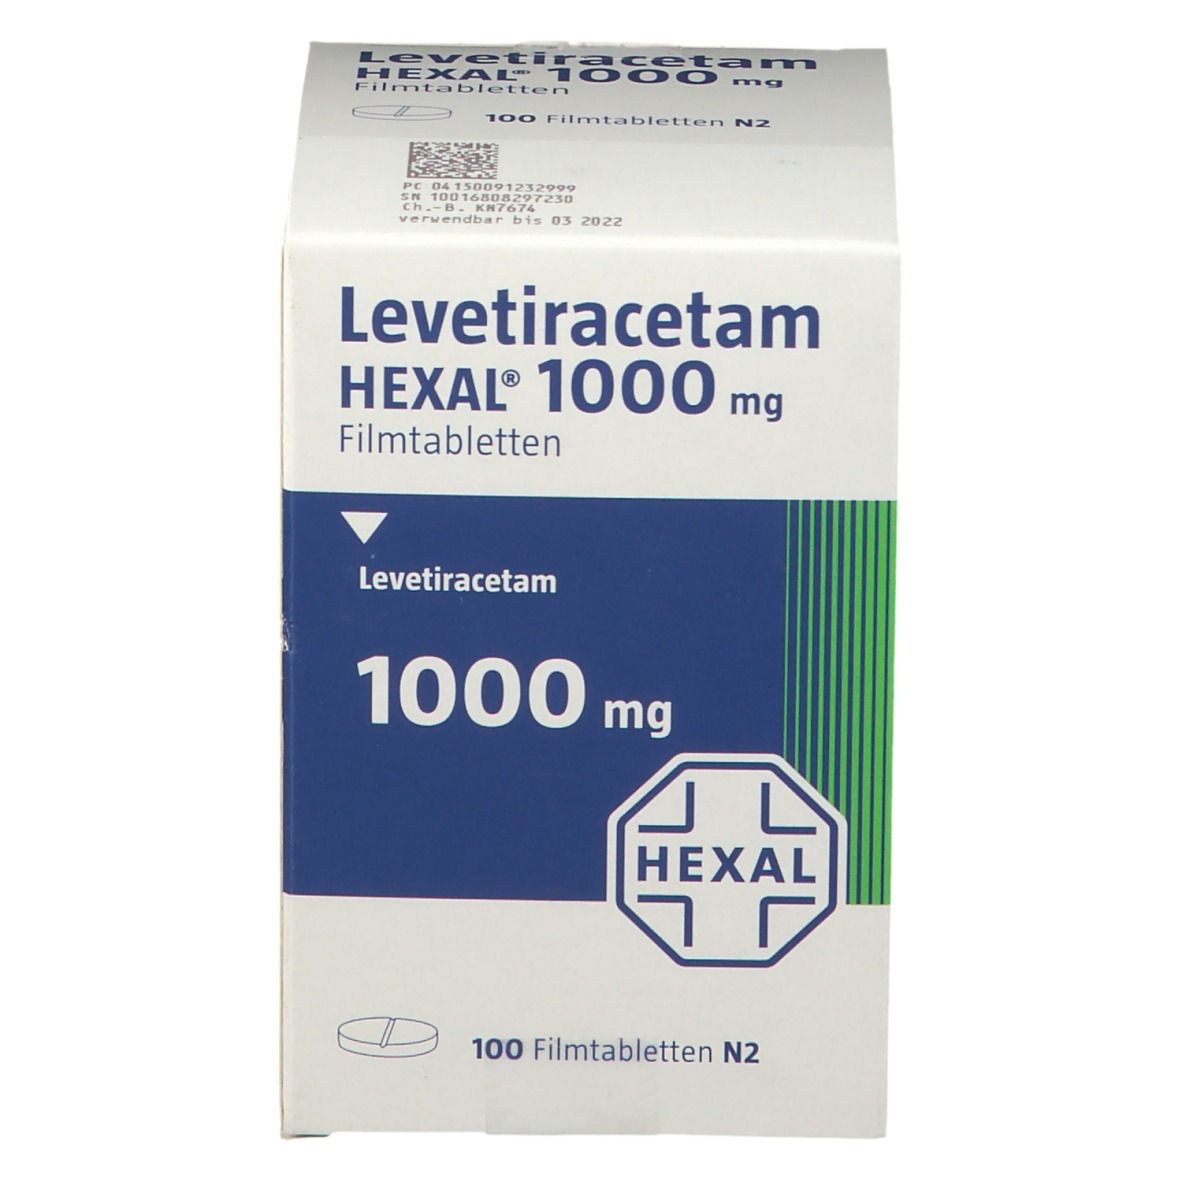 Levetiracetam HEXAL® 1000 mg